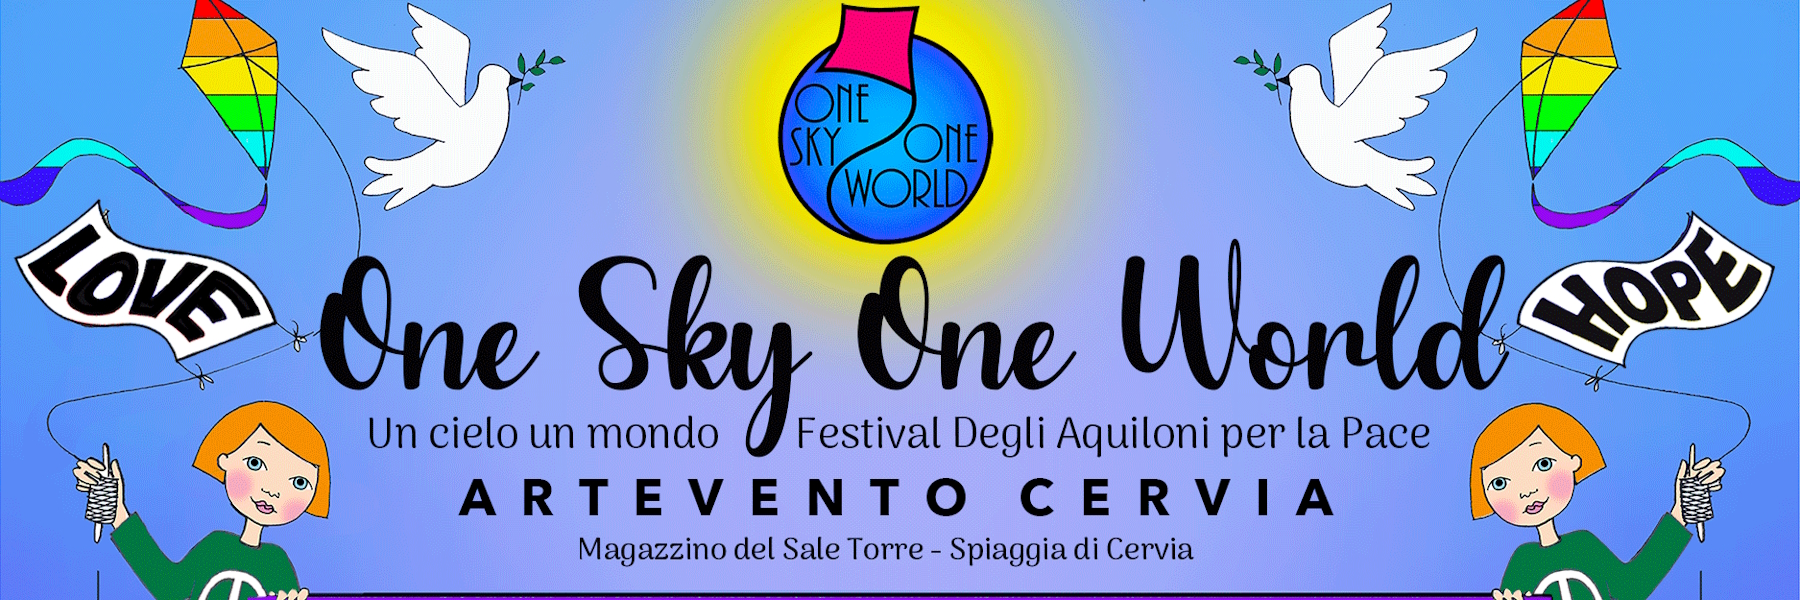 One Sky One World - Artevento Cervia